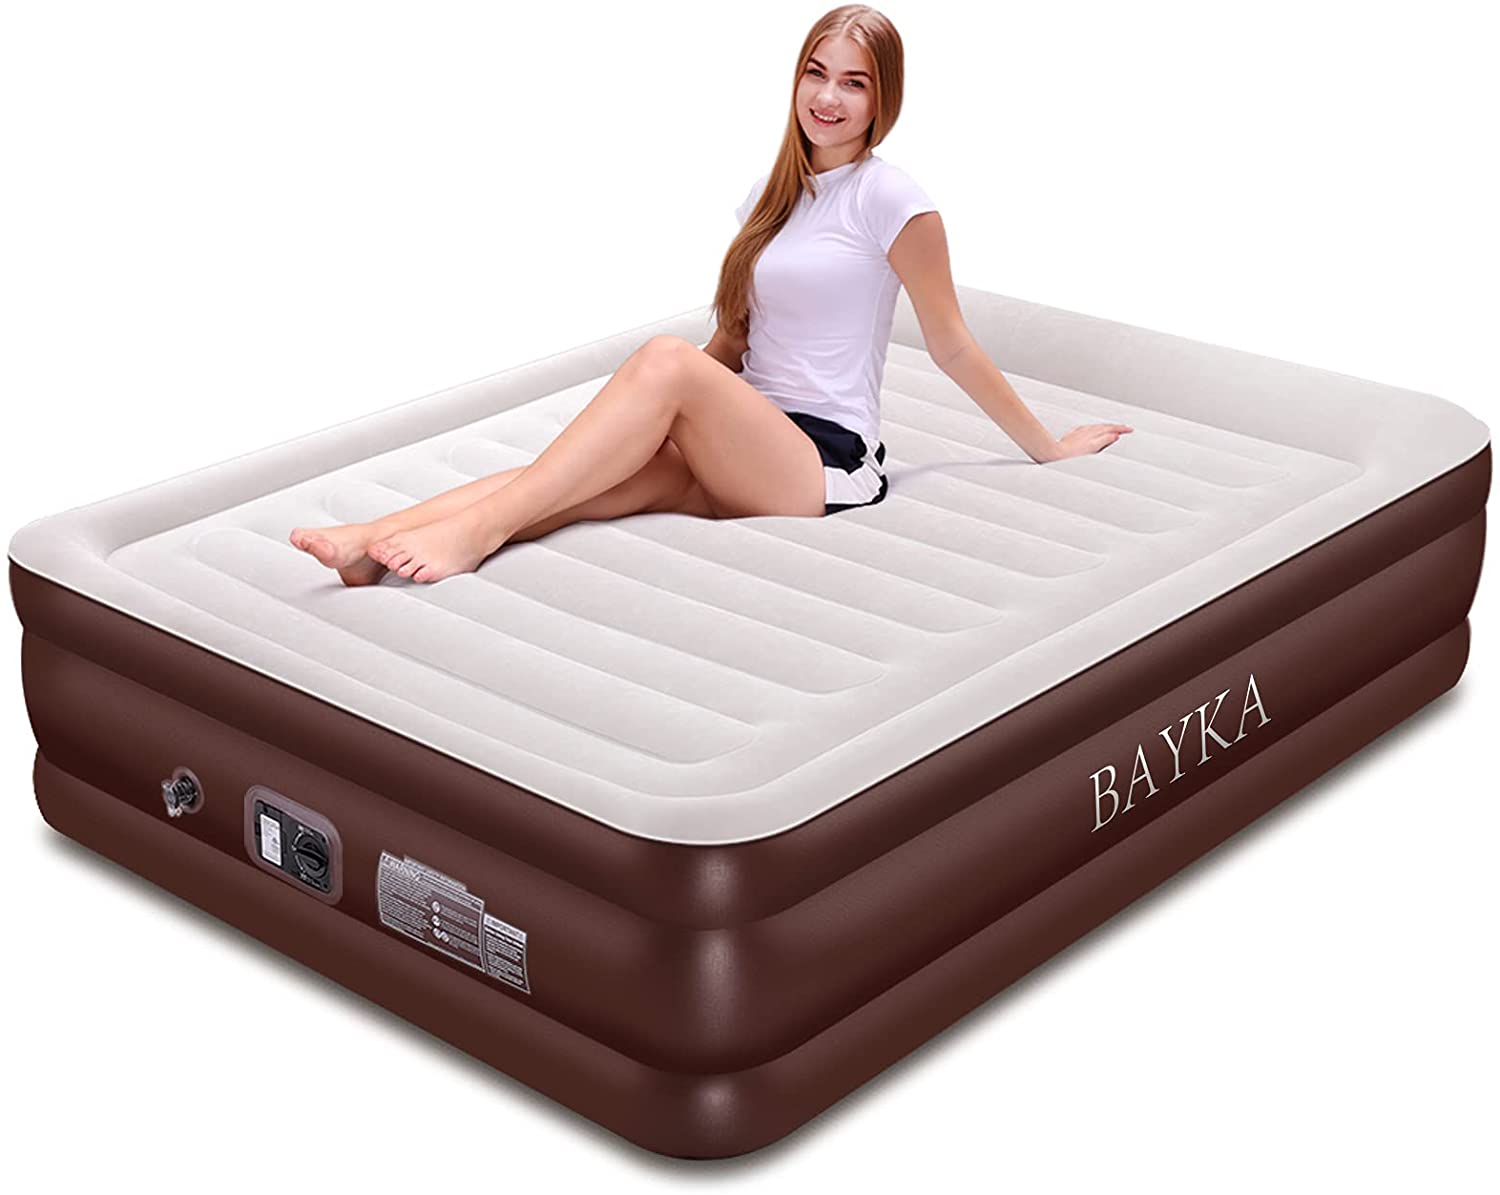 bayka air mattress customer service